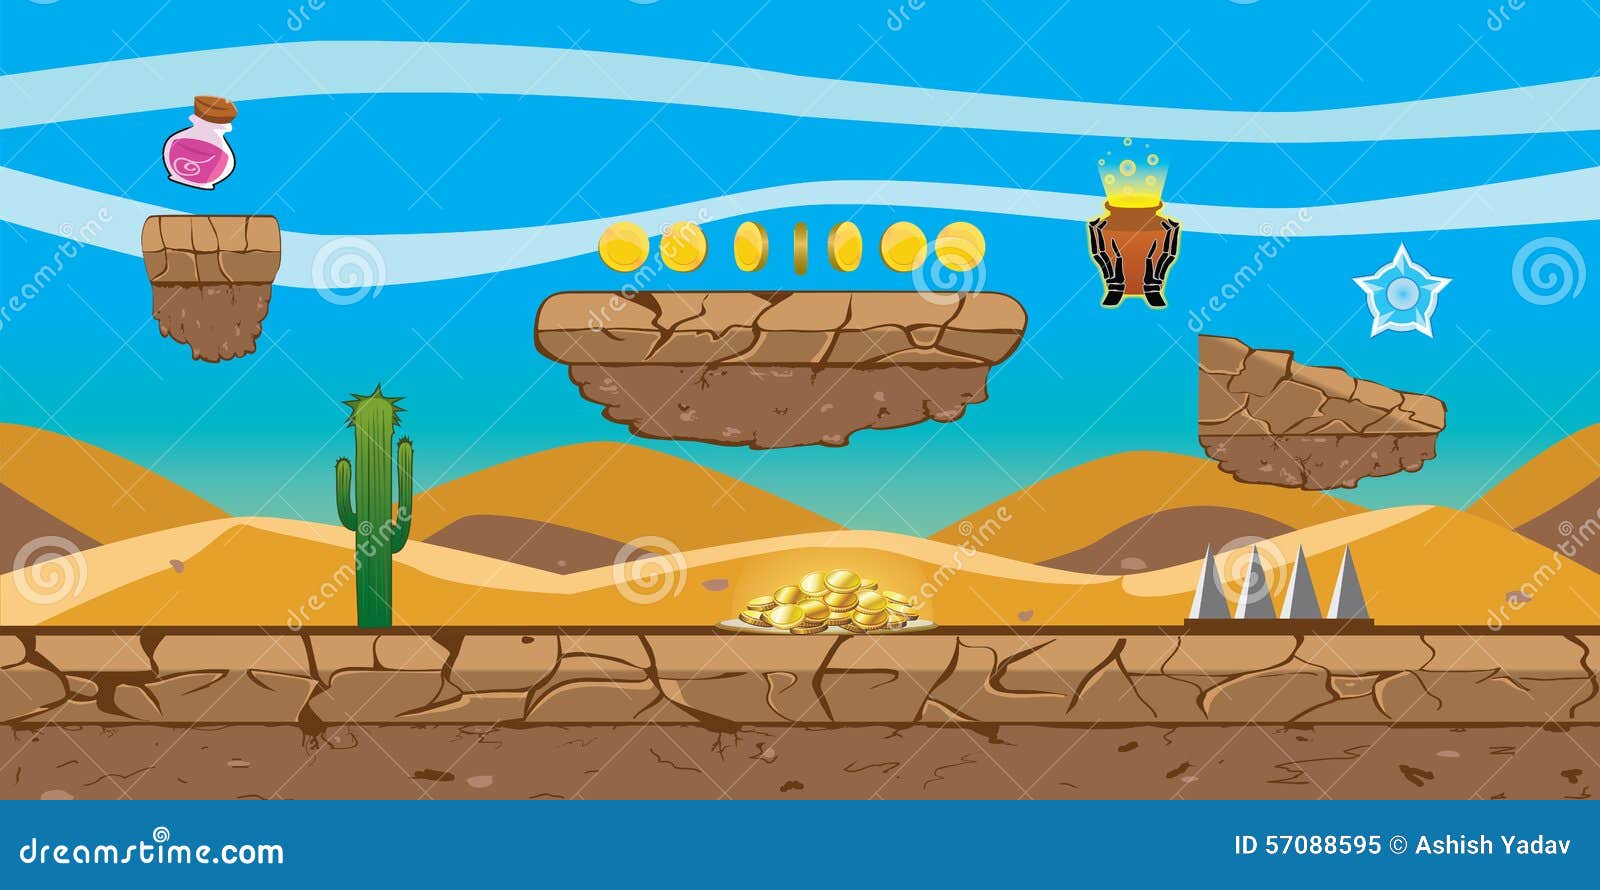 Desert Platform Game Background sẽ đưa bạn đến với những cảnh quan đầy thử thách, hấp dẫn và kỳ bí. Hãy xem hình ảnh để cùng khám phá và trải nghiệm trò chơi đích thực.